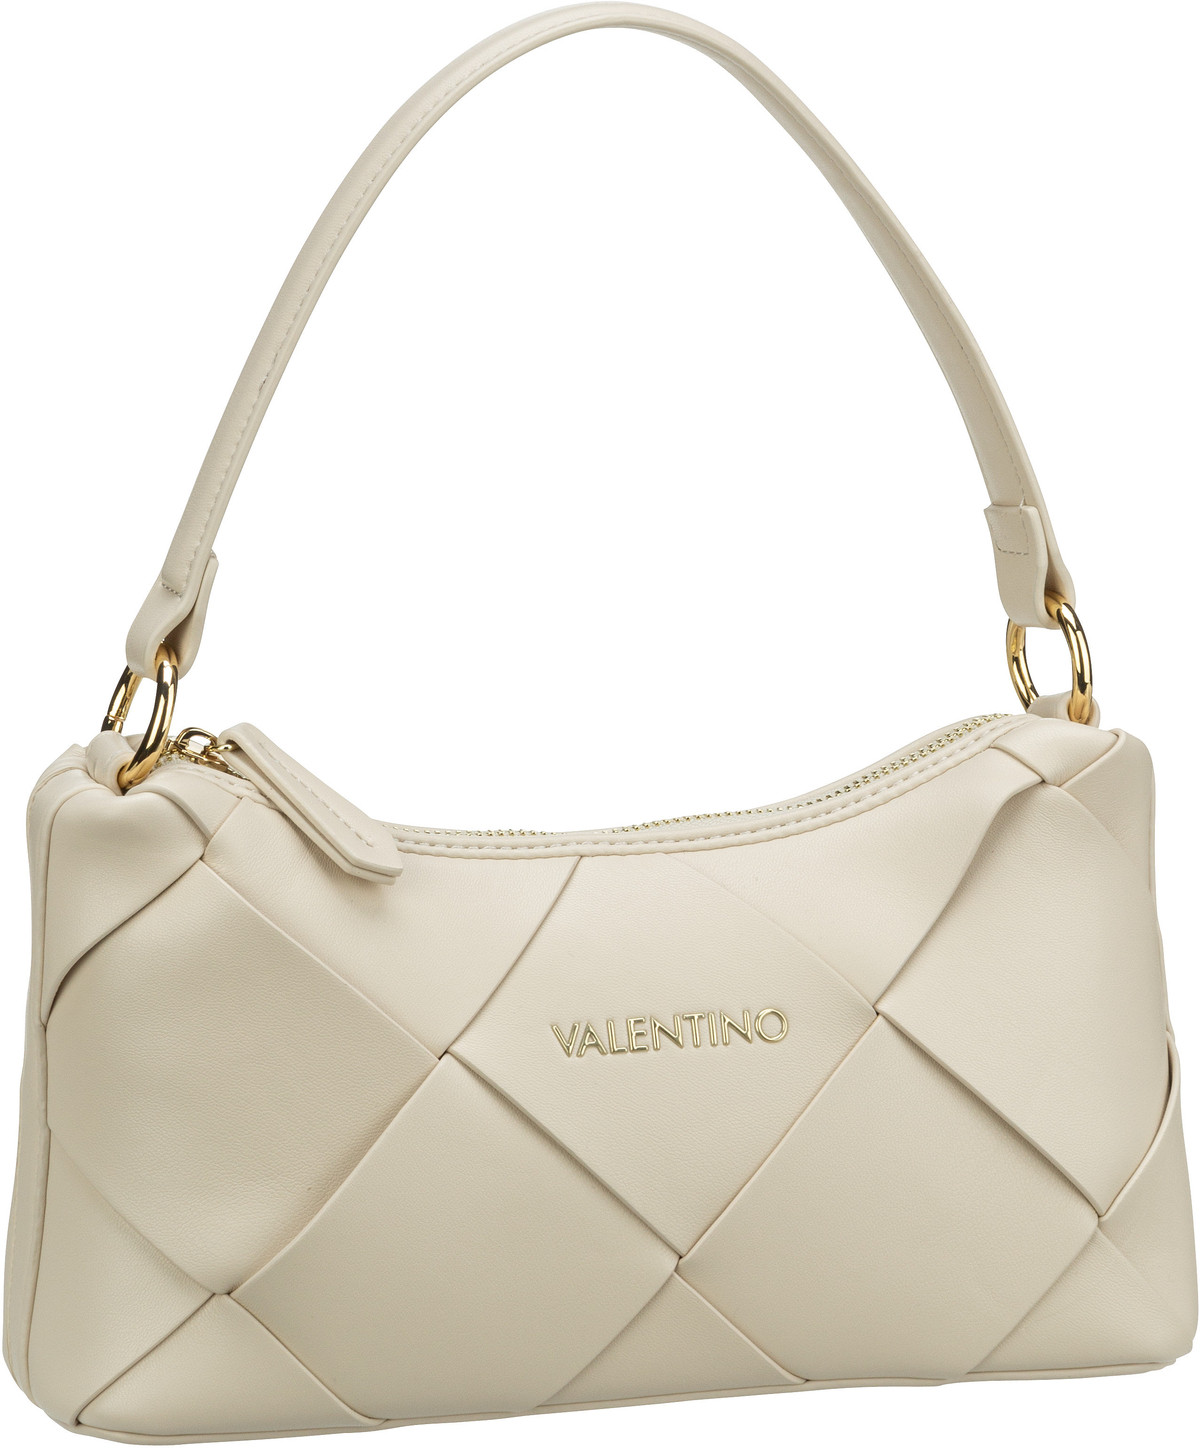 Valentino Ibiza Shoulder Bag 503 - Off White